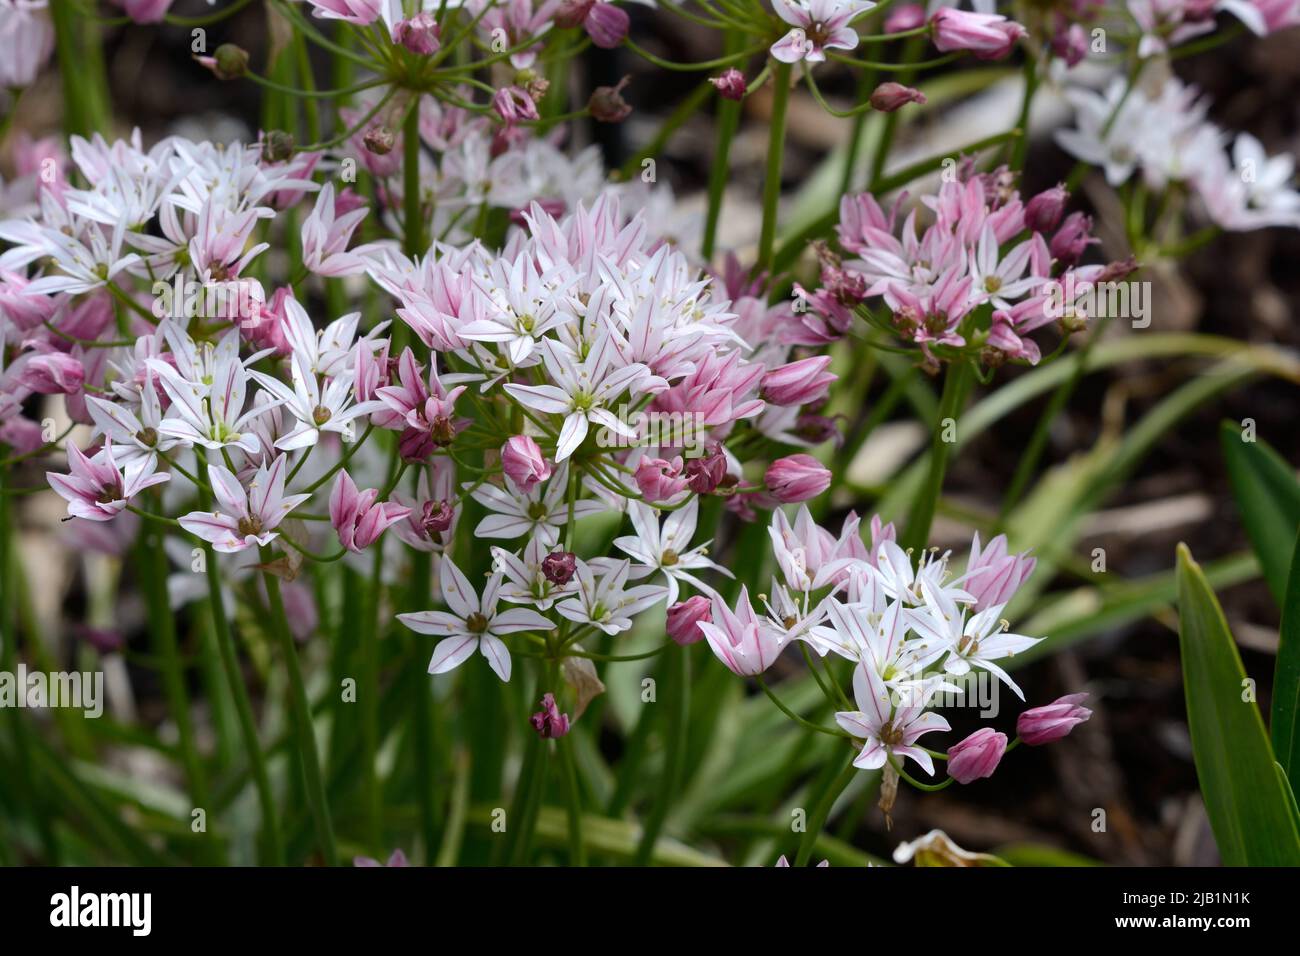 Allium camelion fleurs ornementales oignon fleurs rose foncé qui s'estompent à blanc Banque D'Images